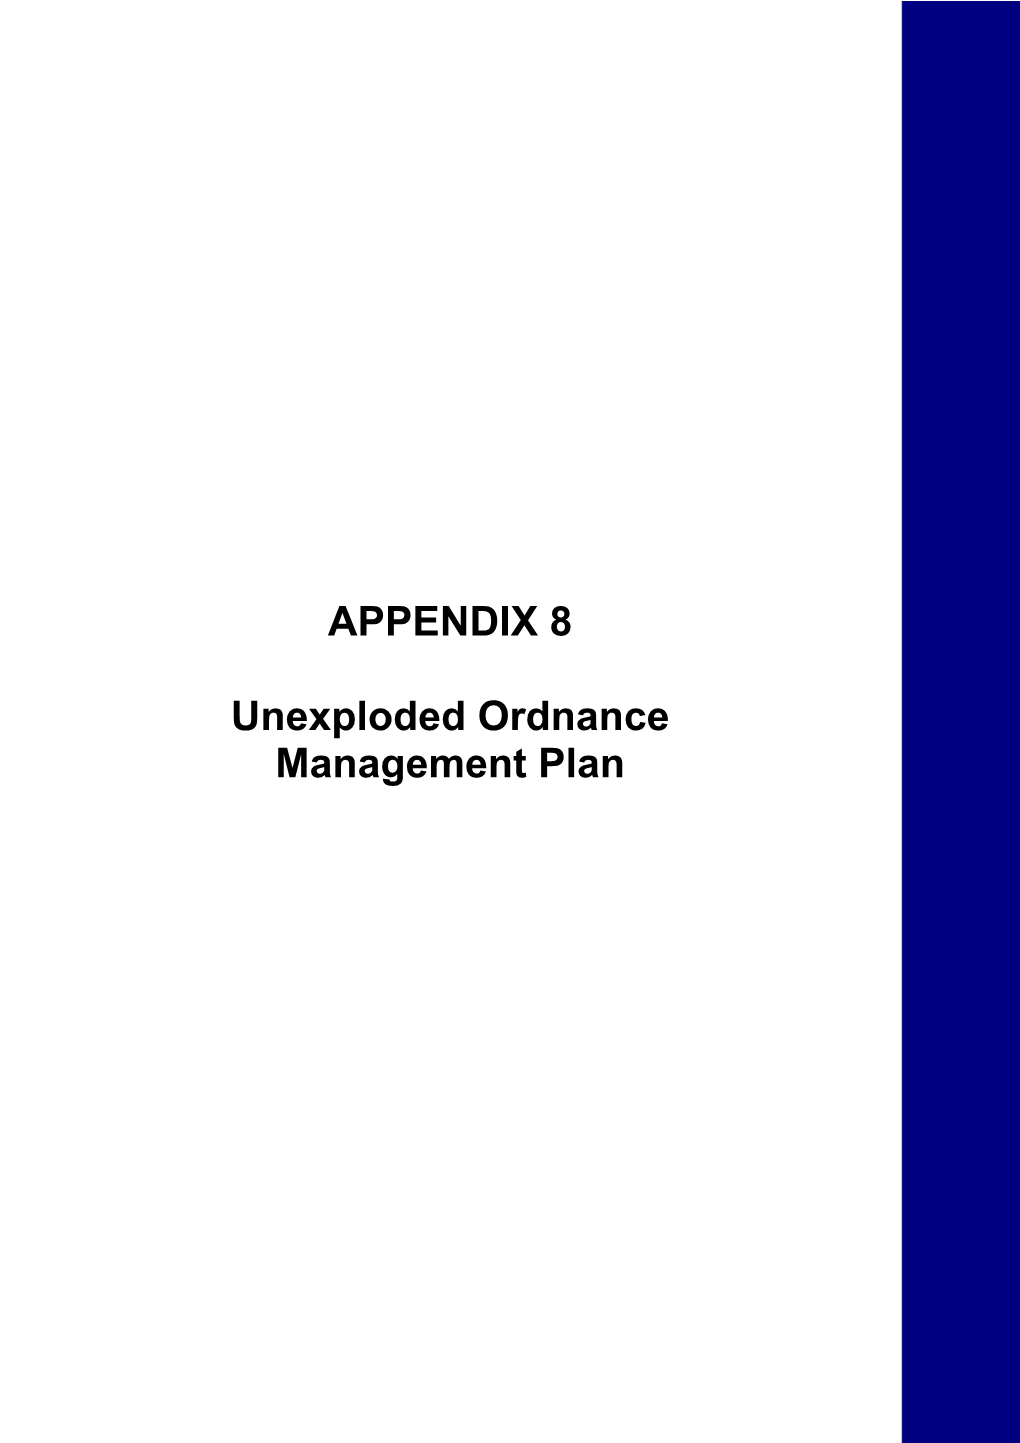 APPENDIX 8 Unexploded Ordnance Management Plan